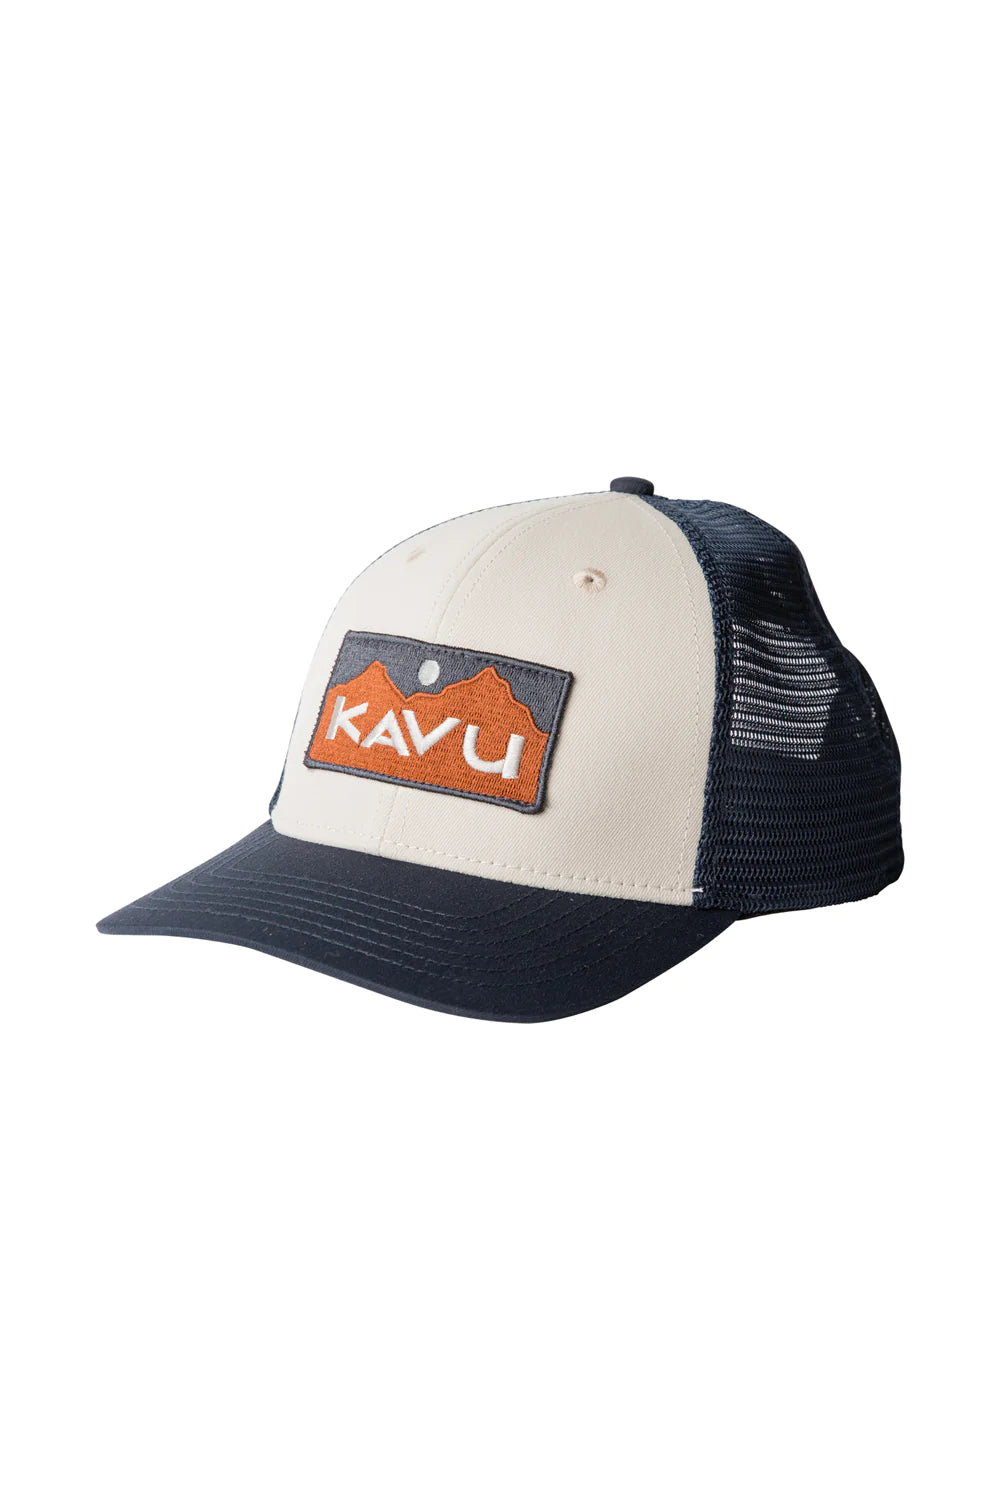 Kavu - Trucker Above Standard River Wild